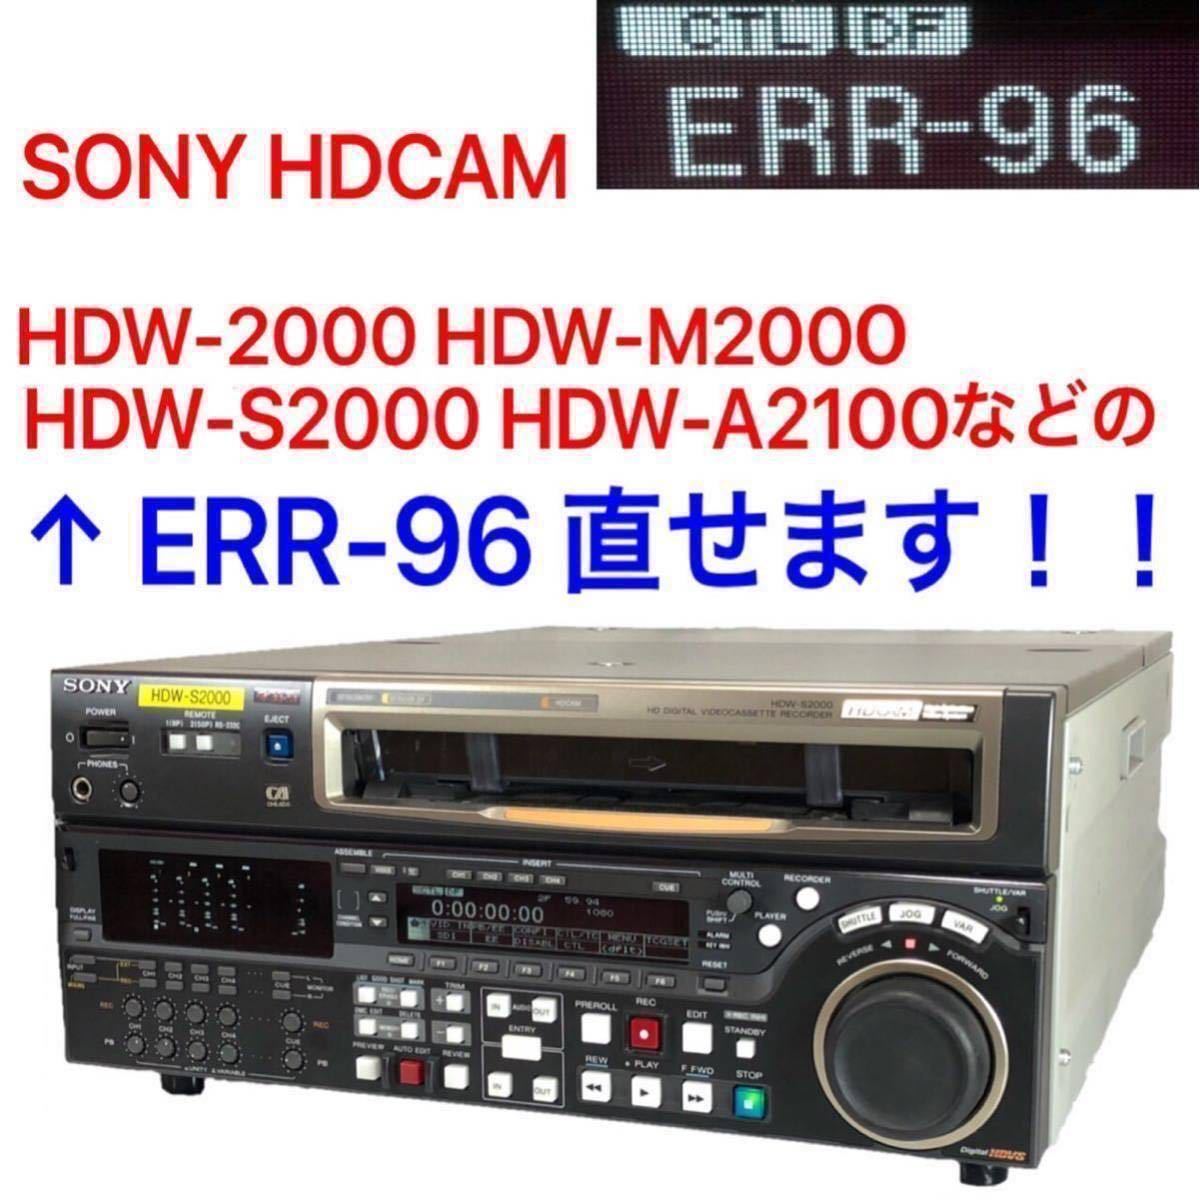 SONY HDCAM ERR-96 直せます！！HDW-2000 HDW-M2000 HDW-S2000 HDW-A2100 バックアップバッテリー 交換 01